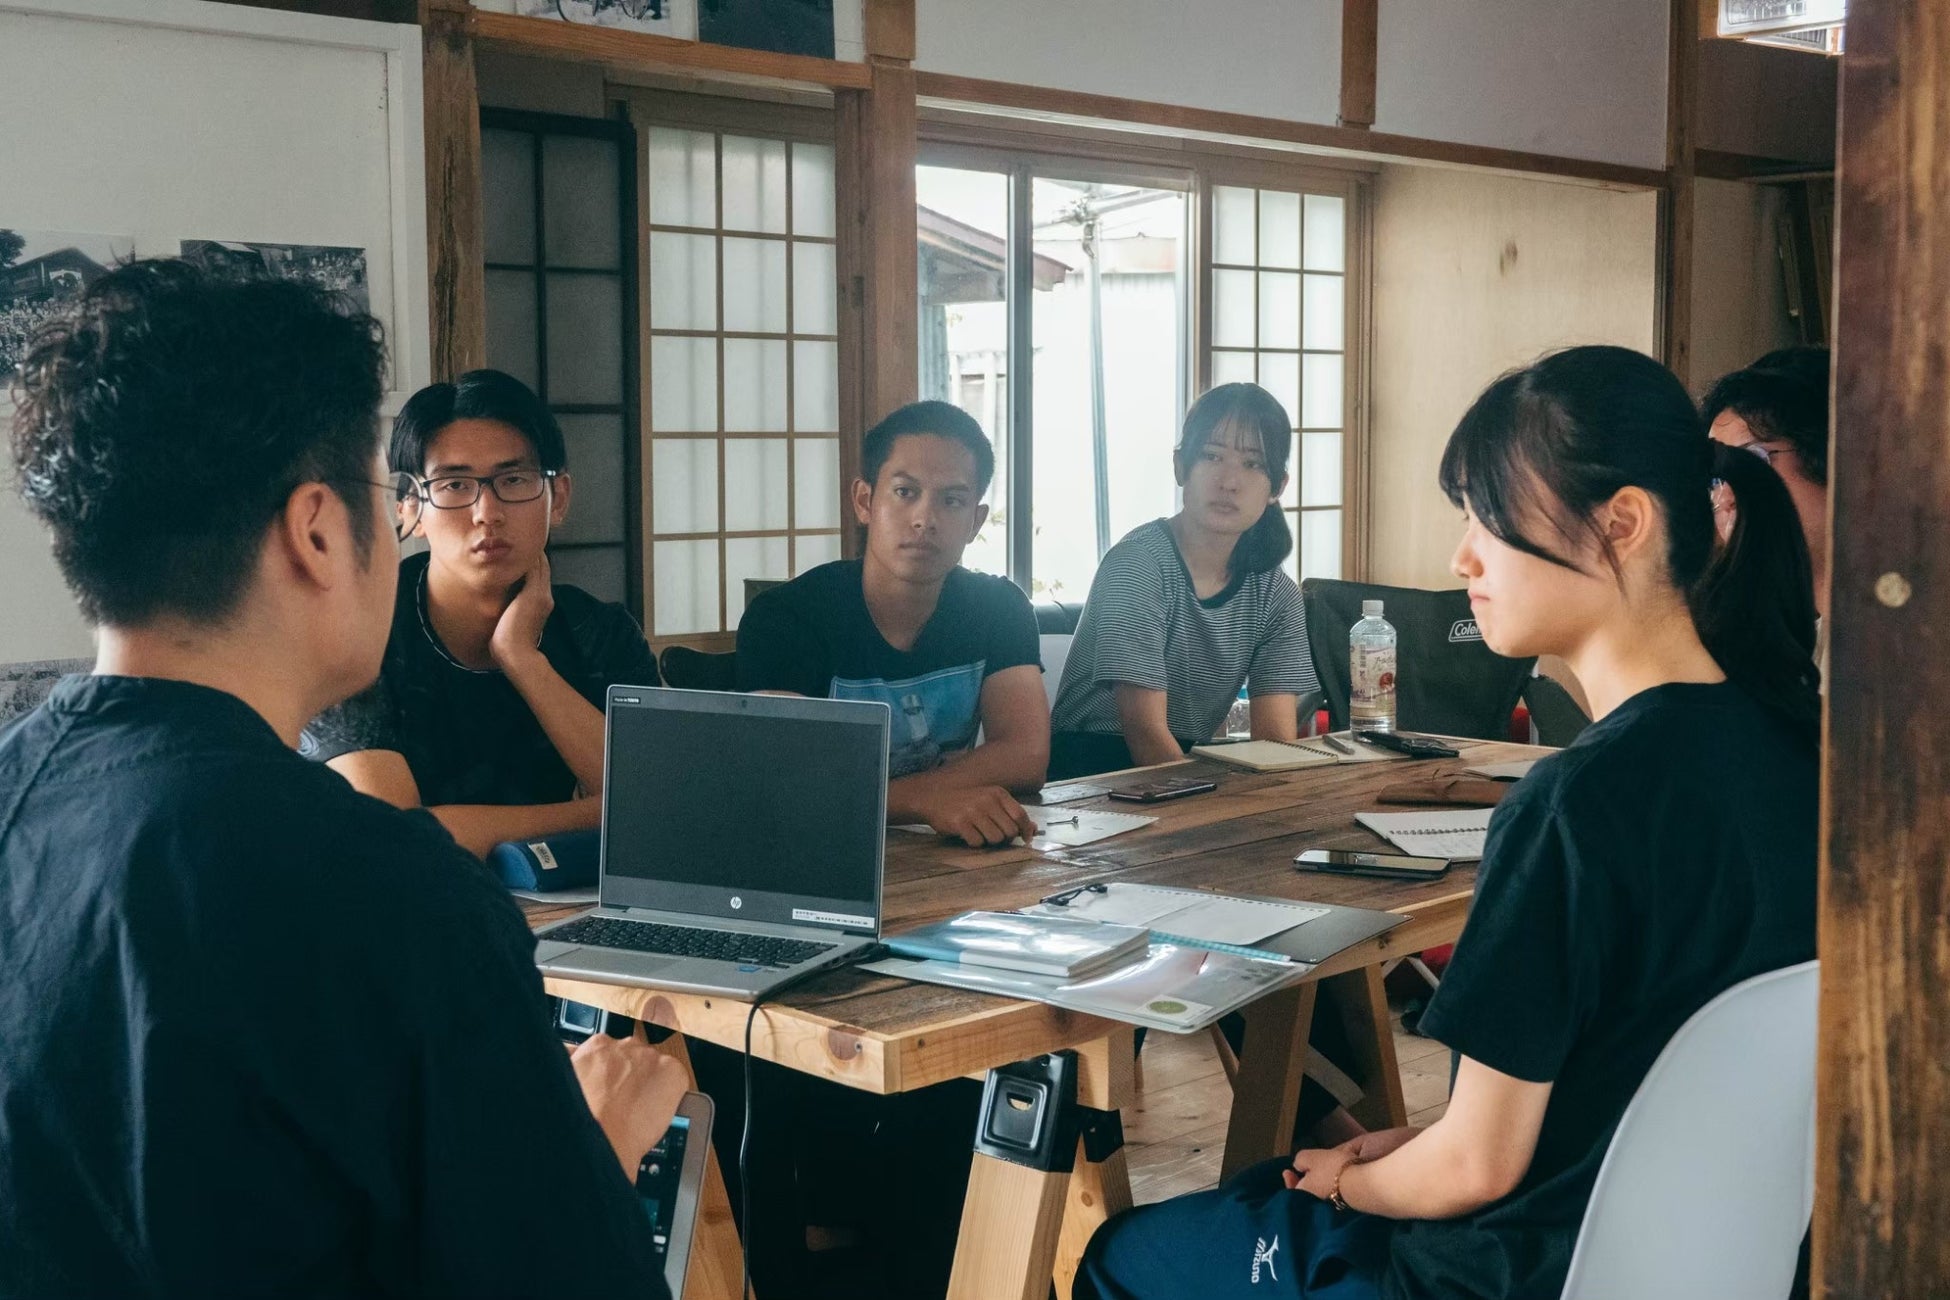 地域留学プログラム『Rural留学』を、福島県磐梯町と埼玉県横瀬町の二地域で開催。Z世代の関係人口創出を目指す。